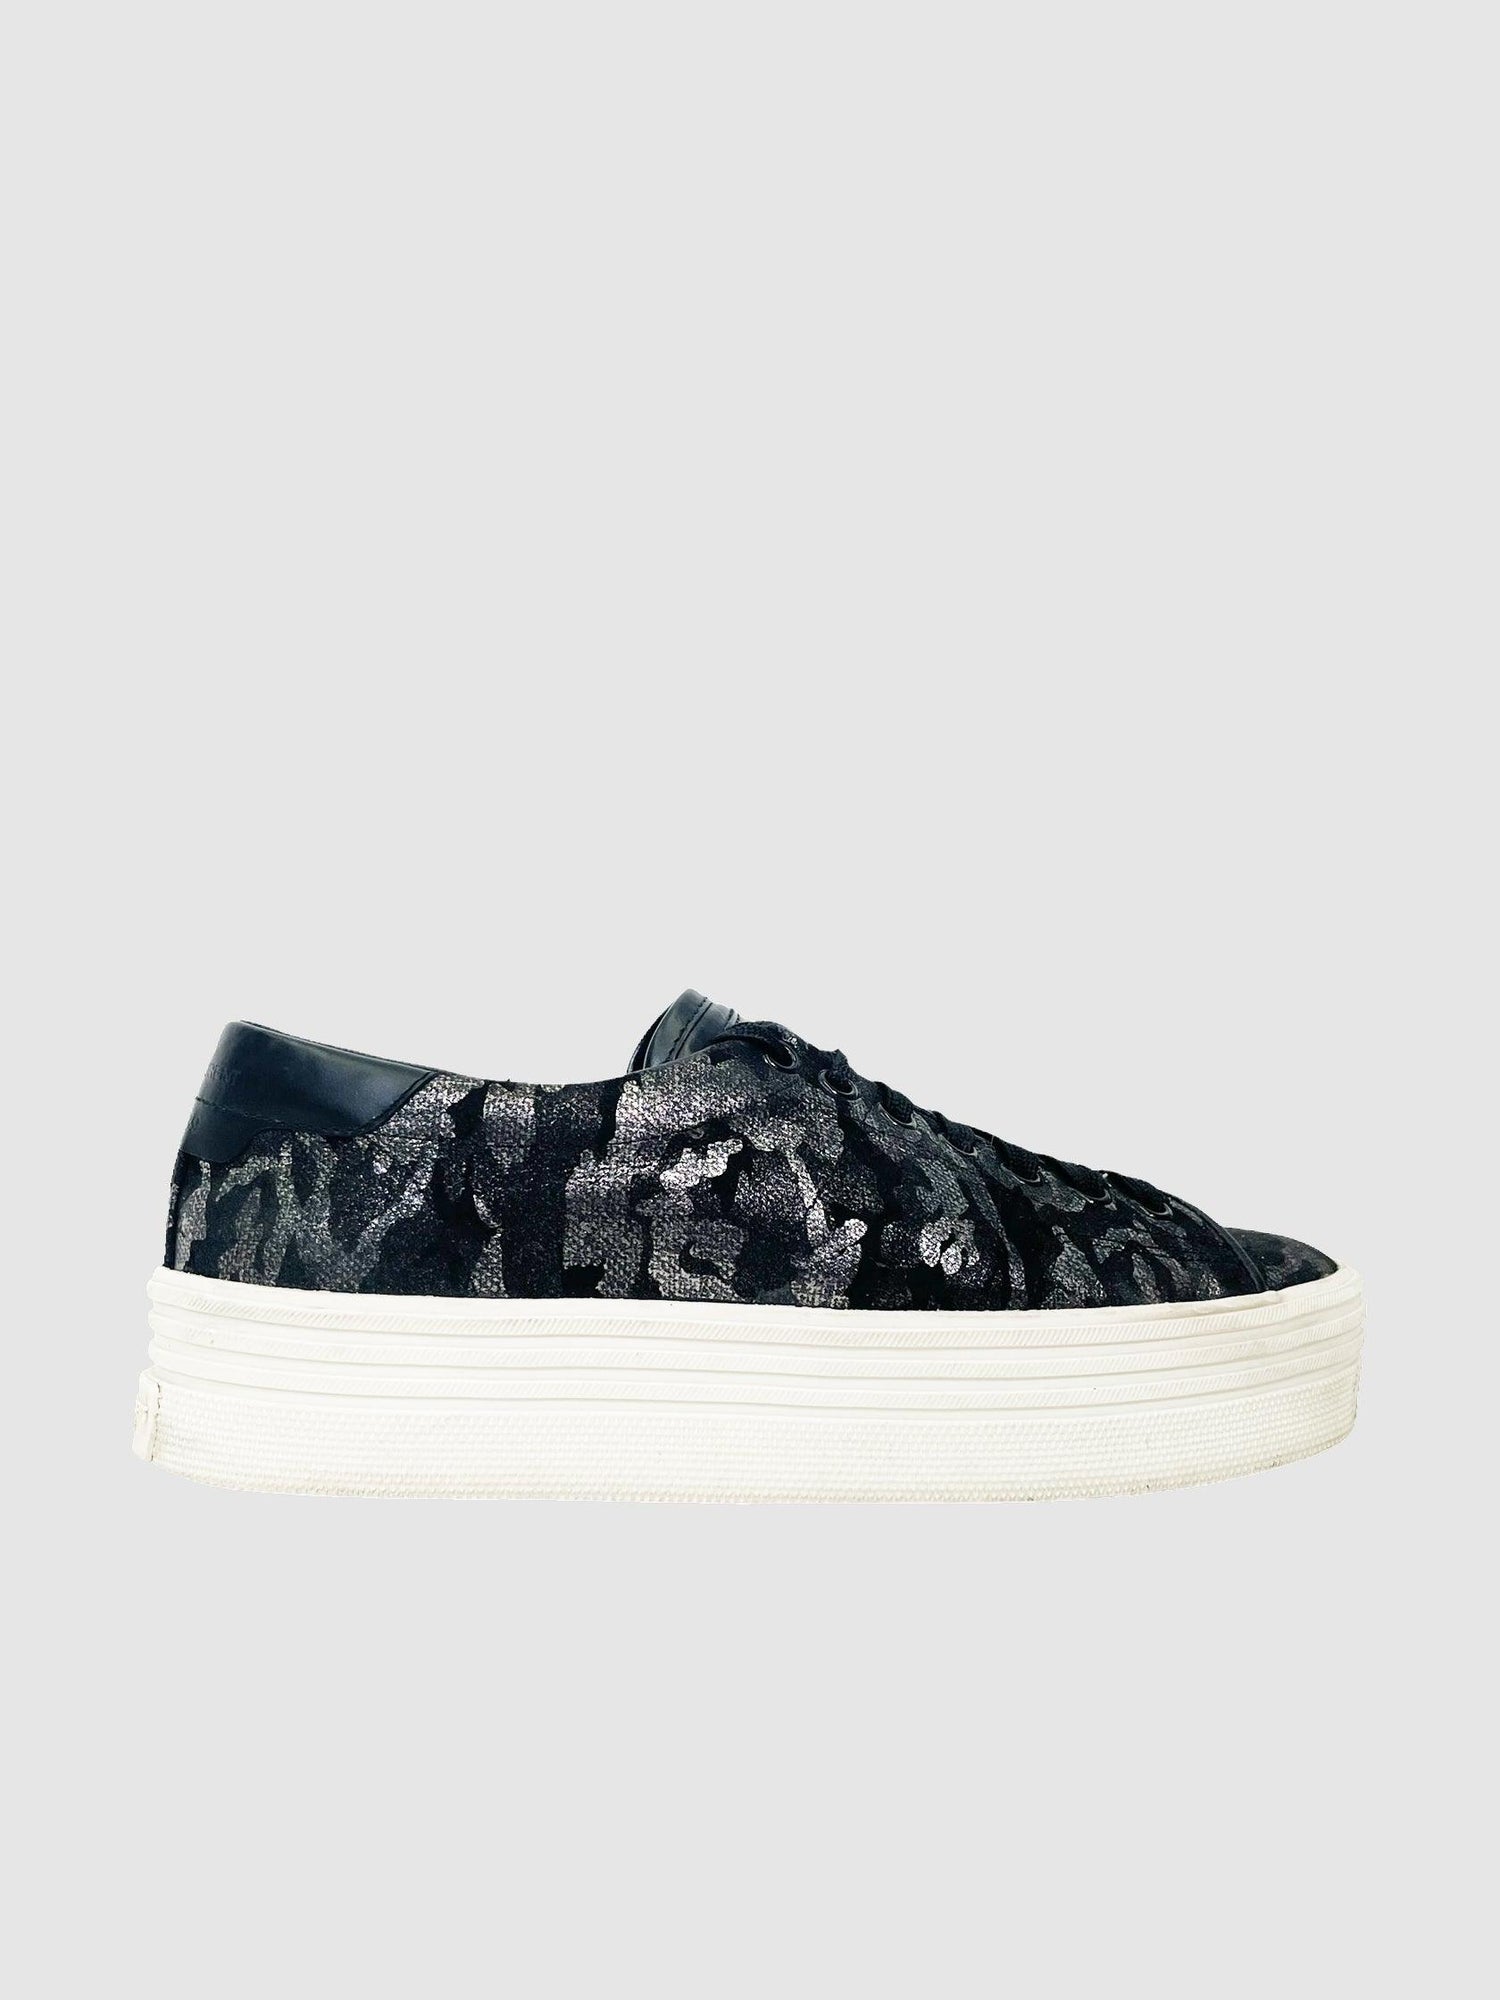 Saint Laurent Leather Sneaker - Size 36.5 - Second Nature Boutique